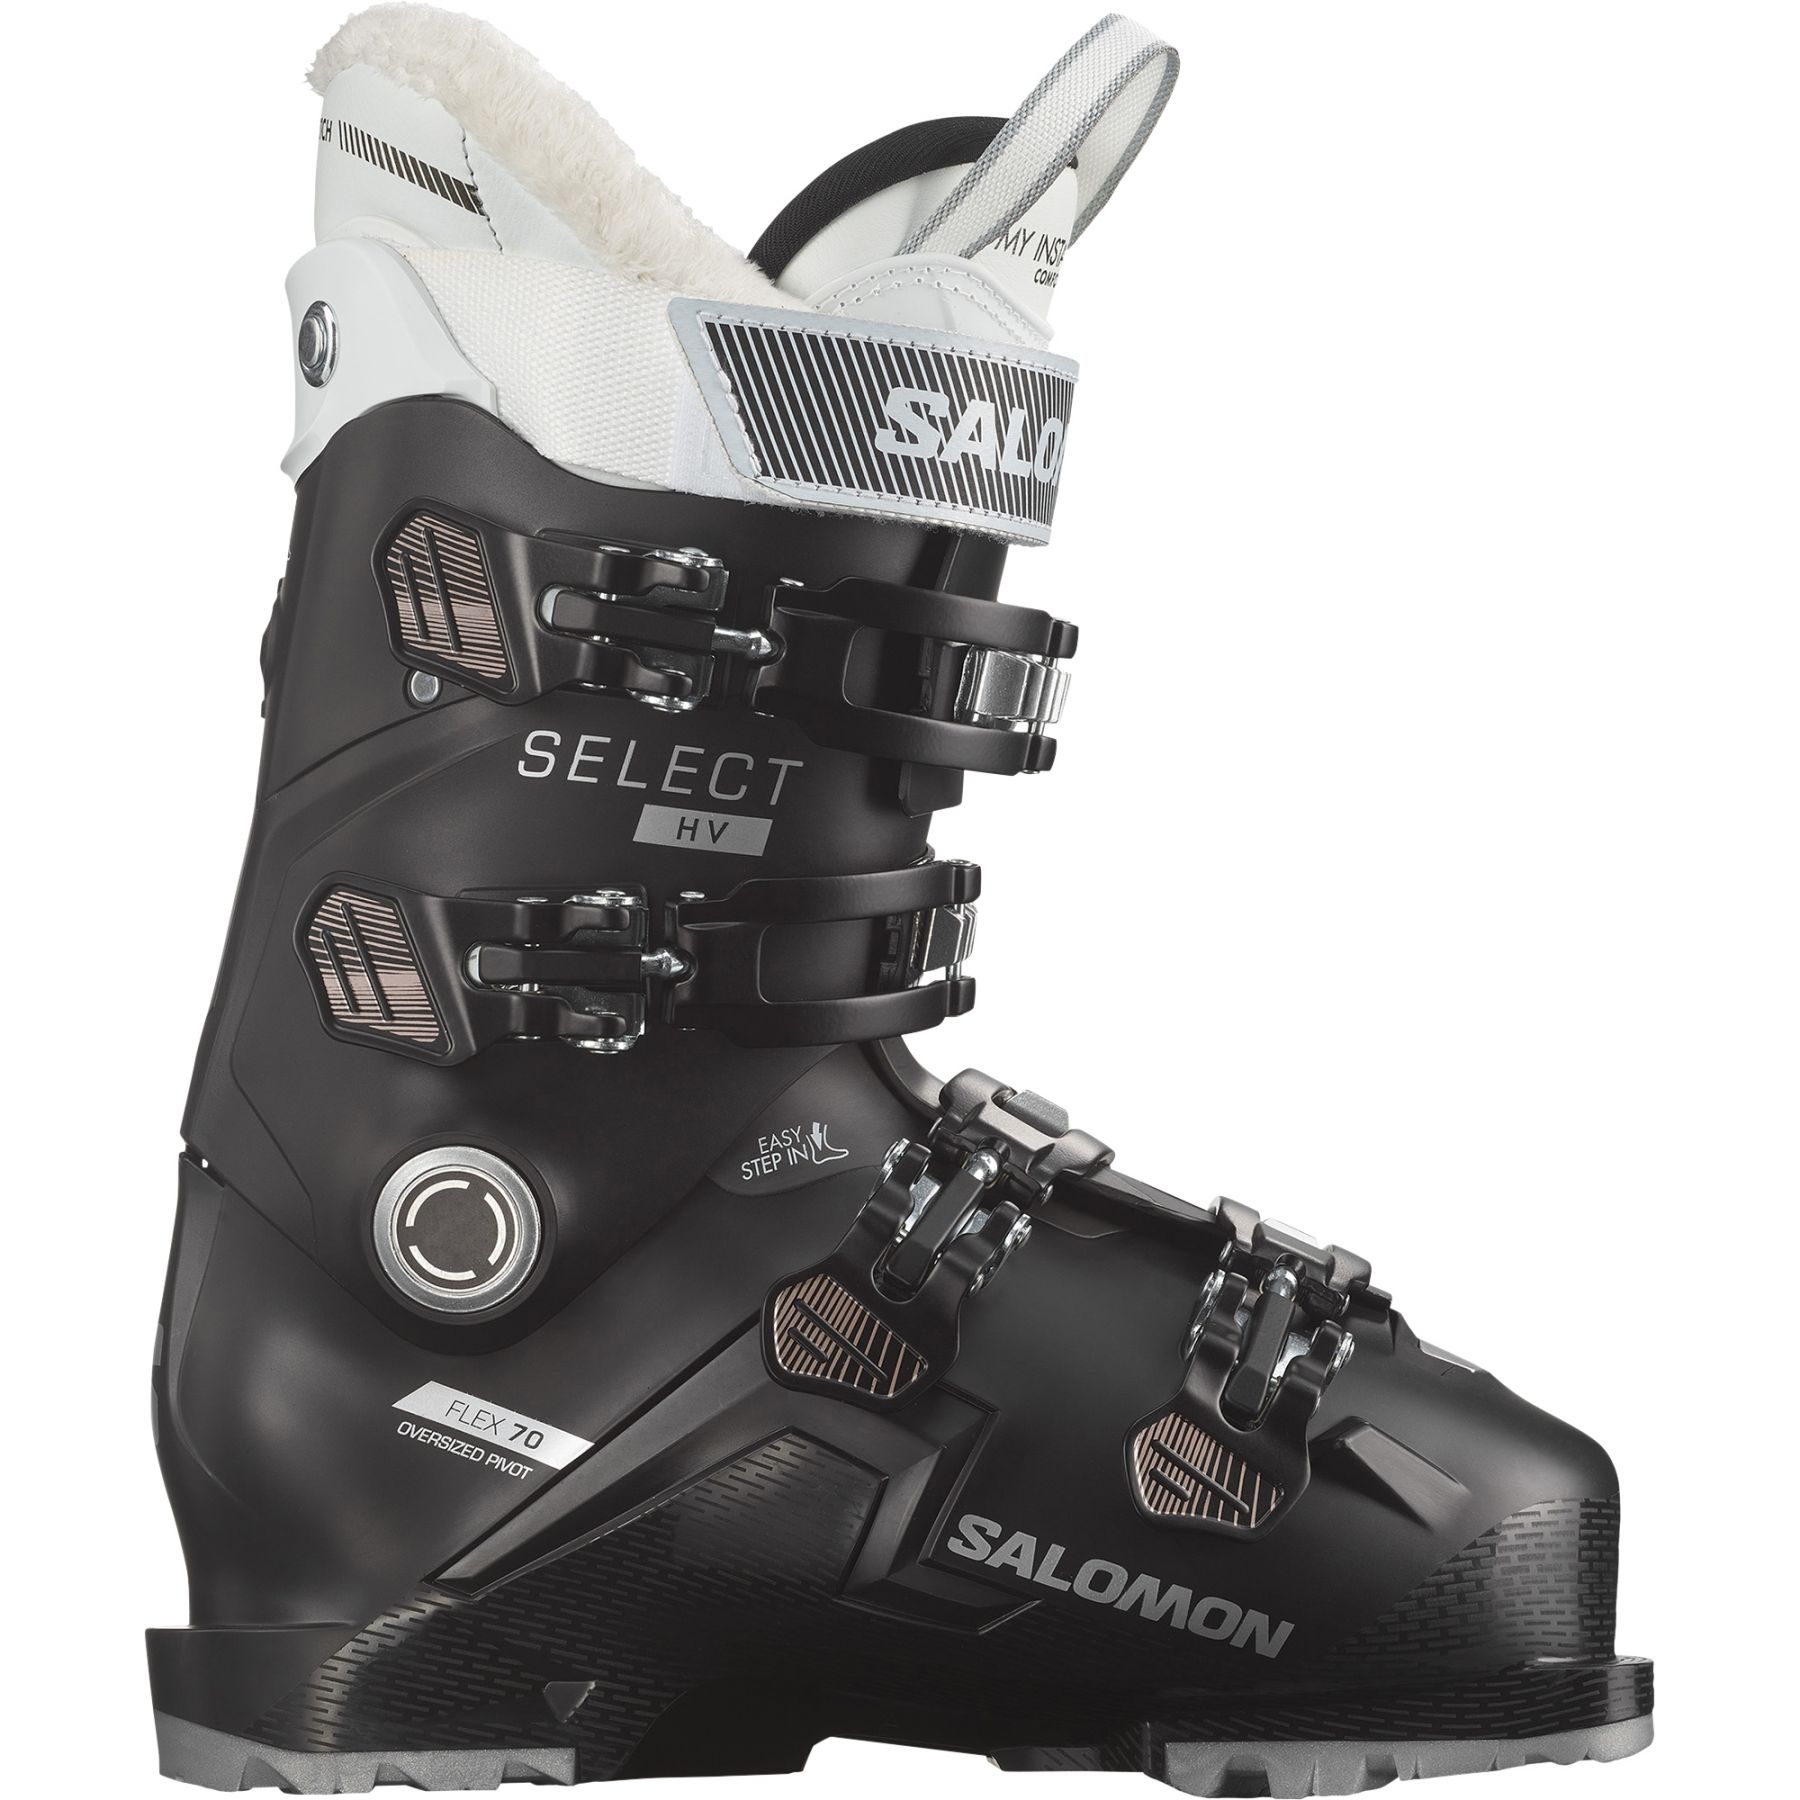 Brug Salomon Select HV 70 W GW, skistøvler, dame, sort/pink/hvid til en forbedret oplevelse